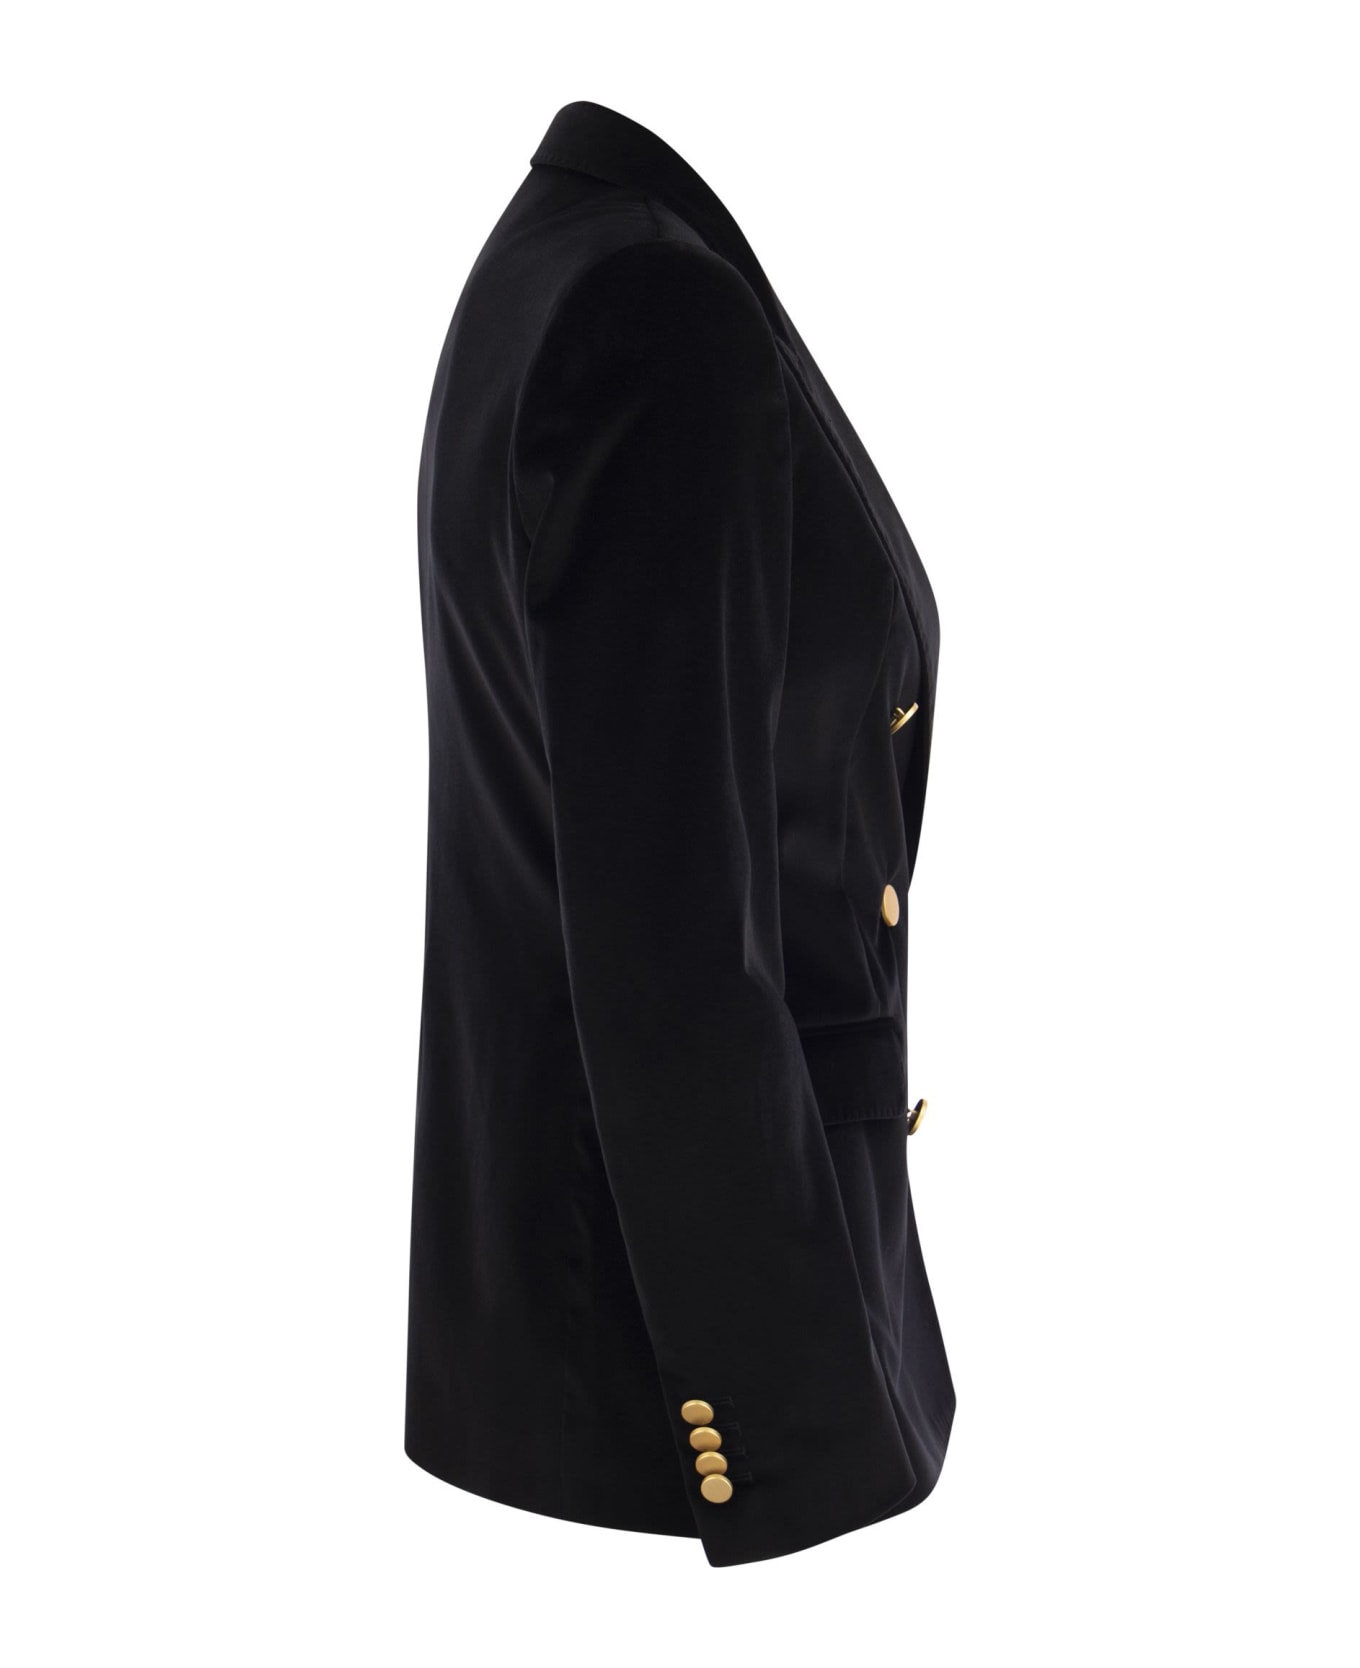 Tagliatore Paris - Velvet Jacket - Black コート